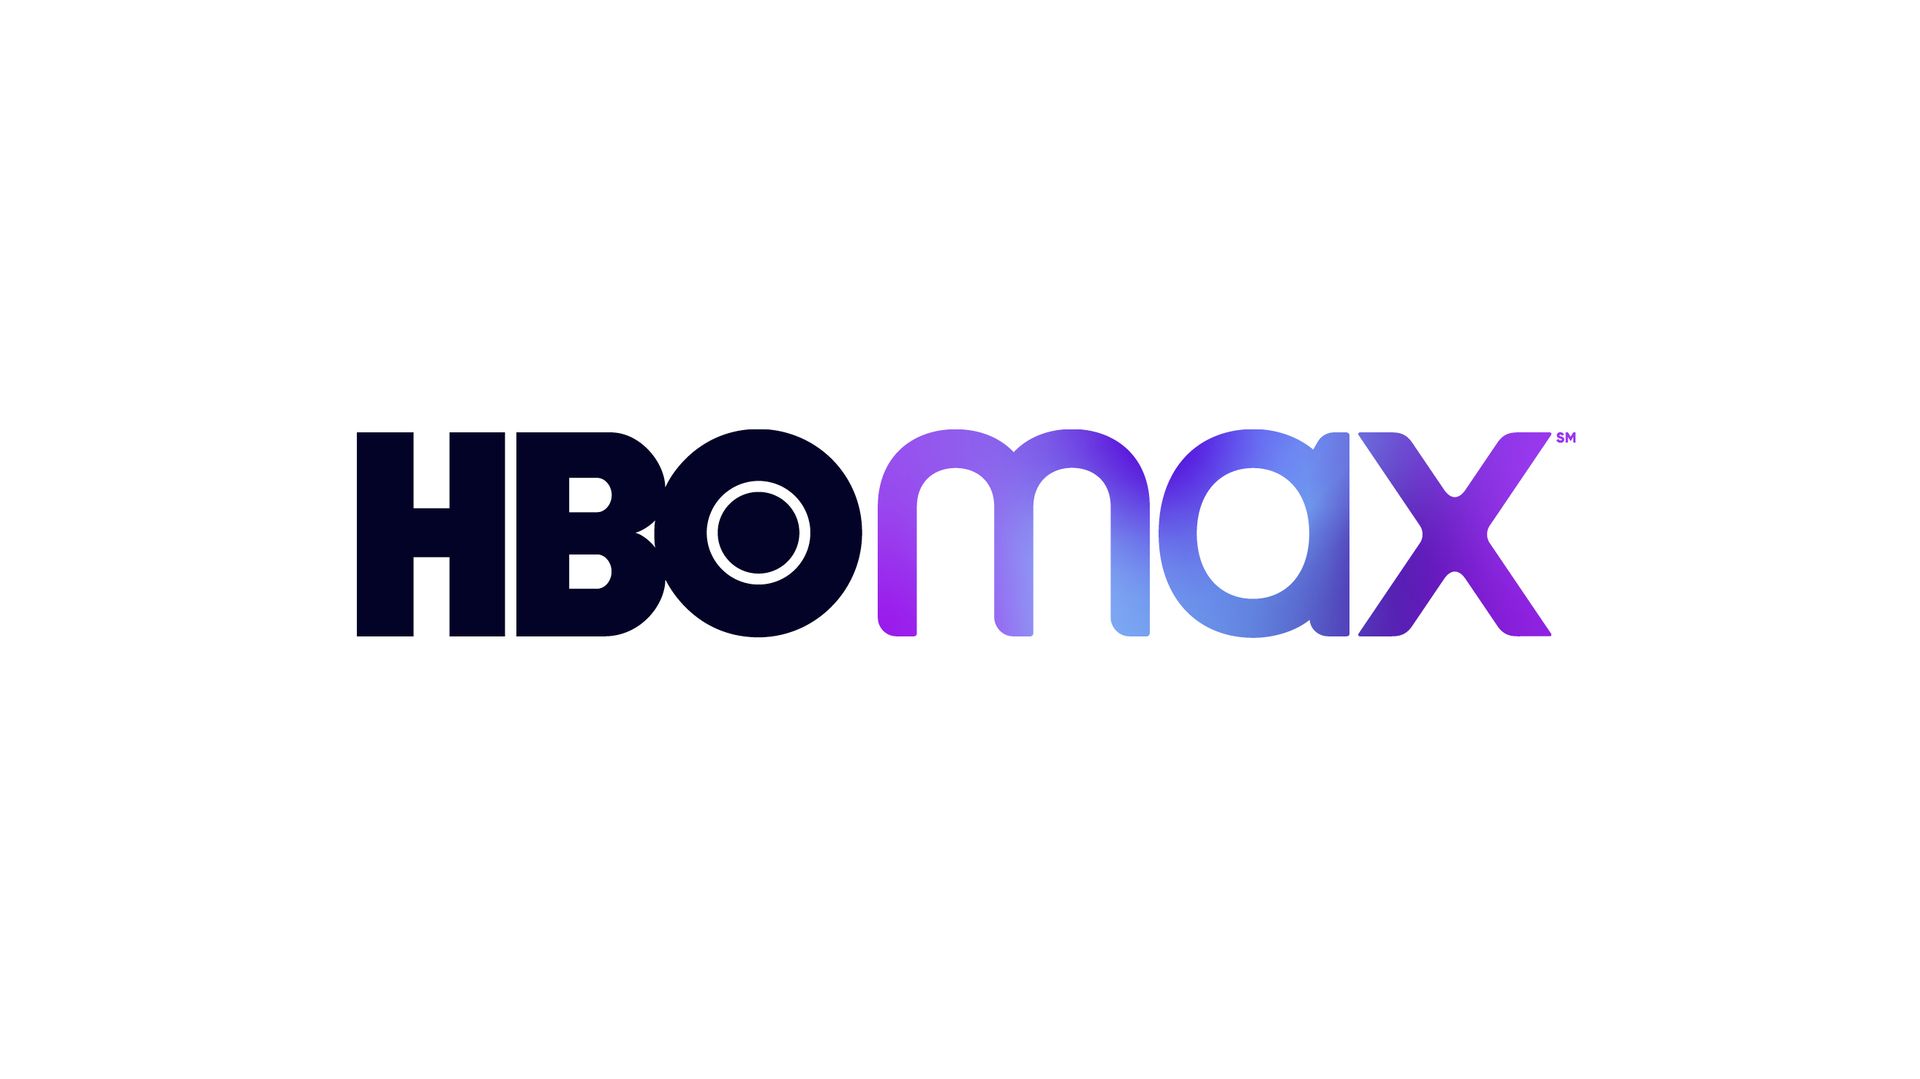 El logo de HBO Max